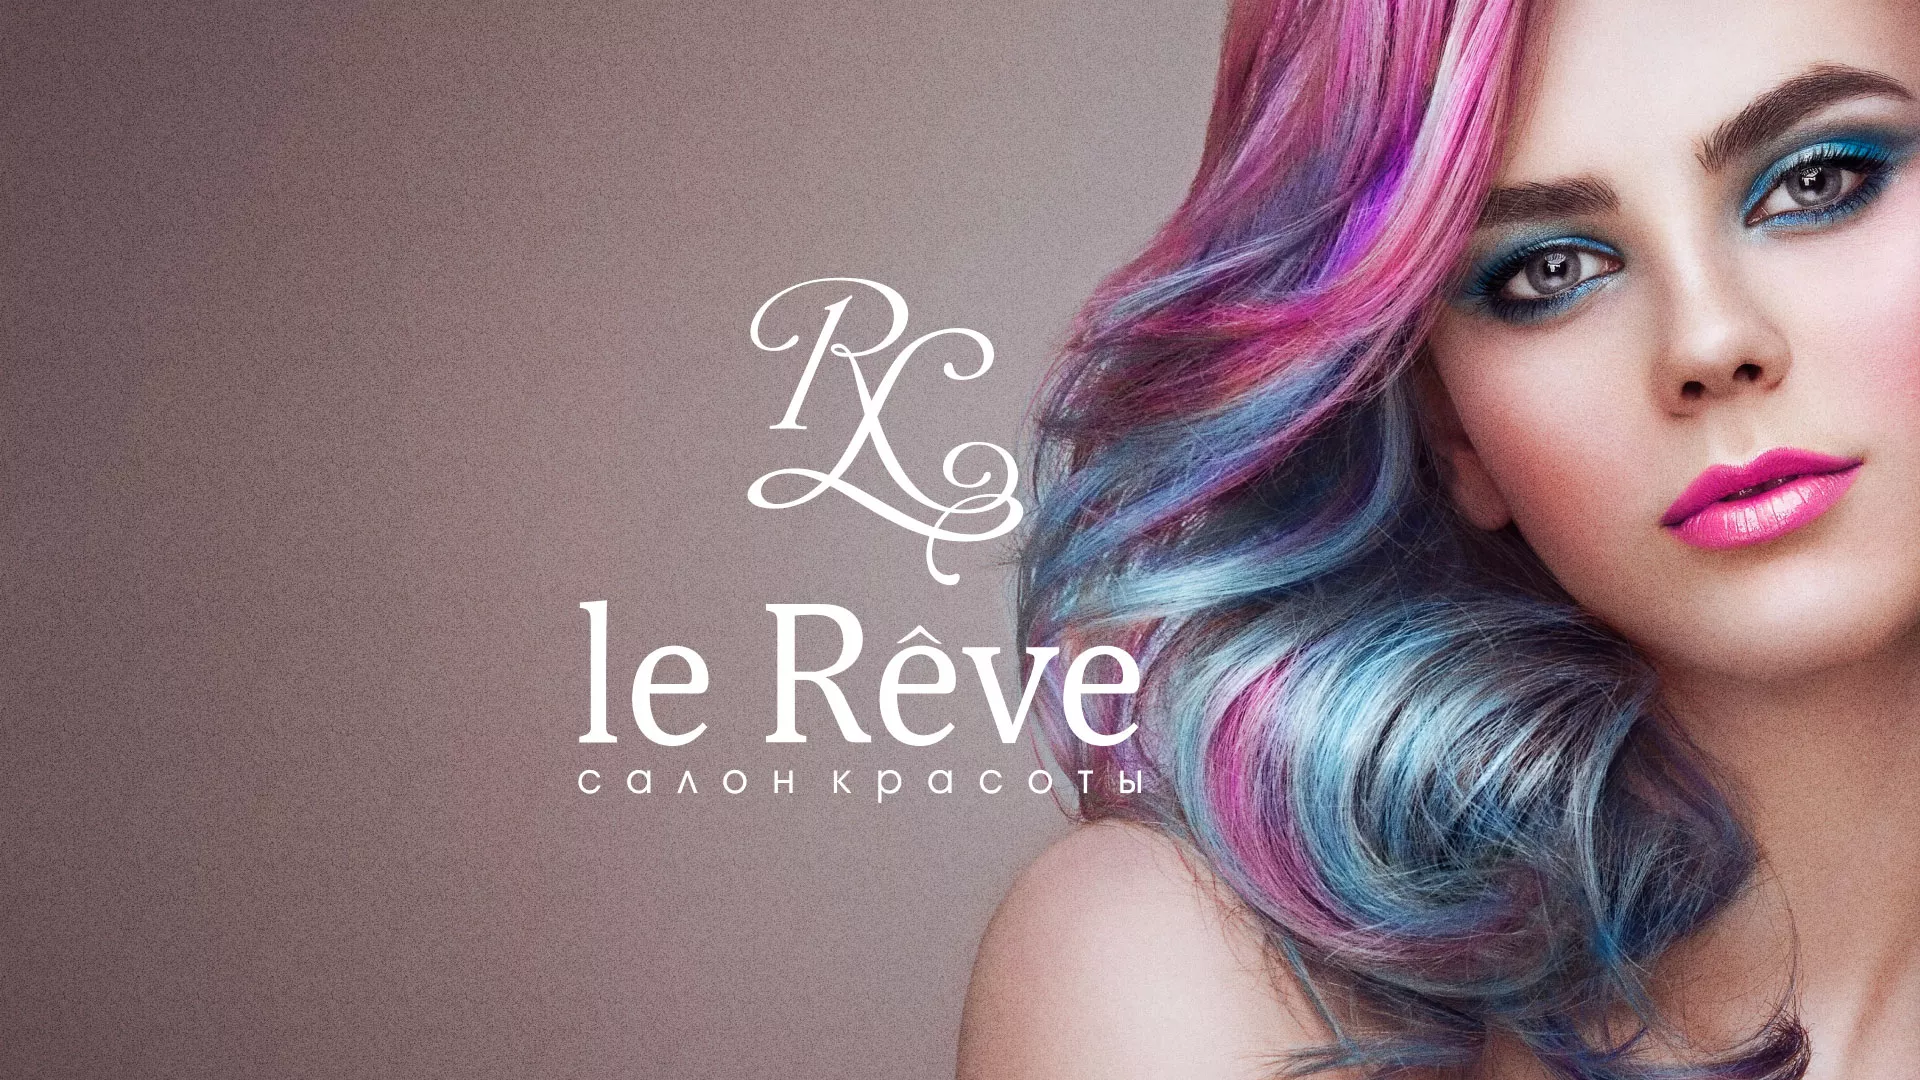 Создание сайта для салона красоты «Le Reve» в Сосновке